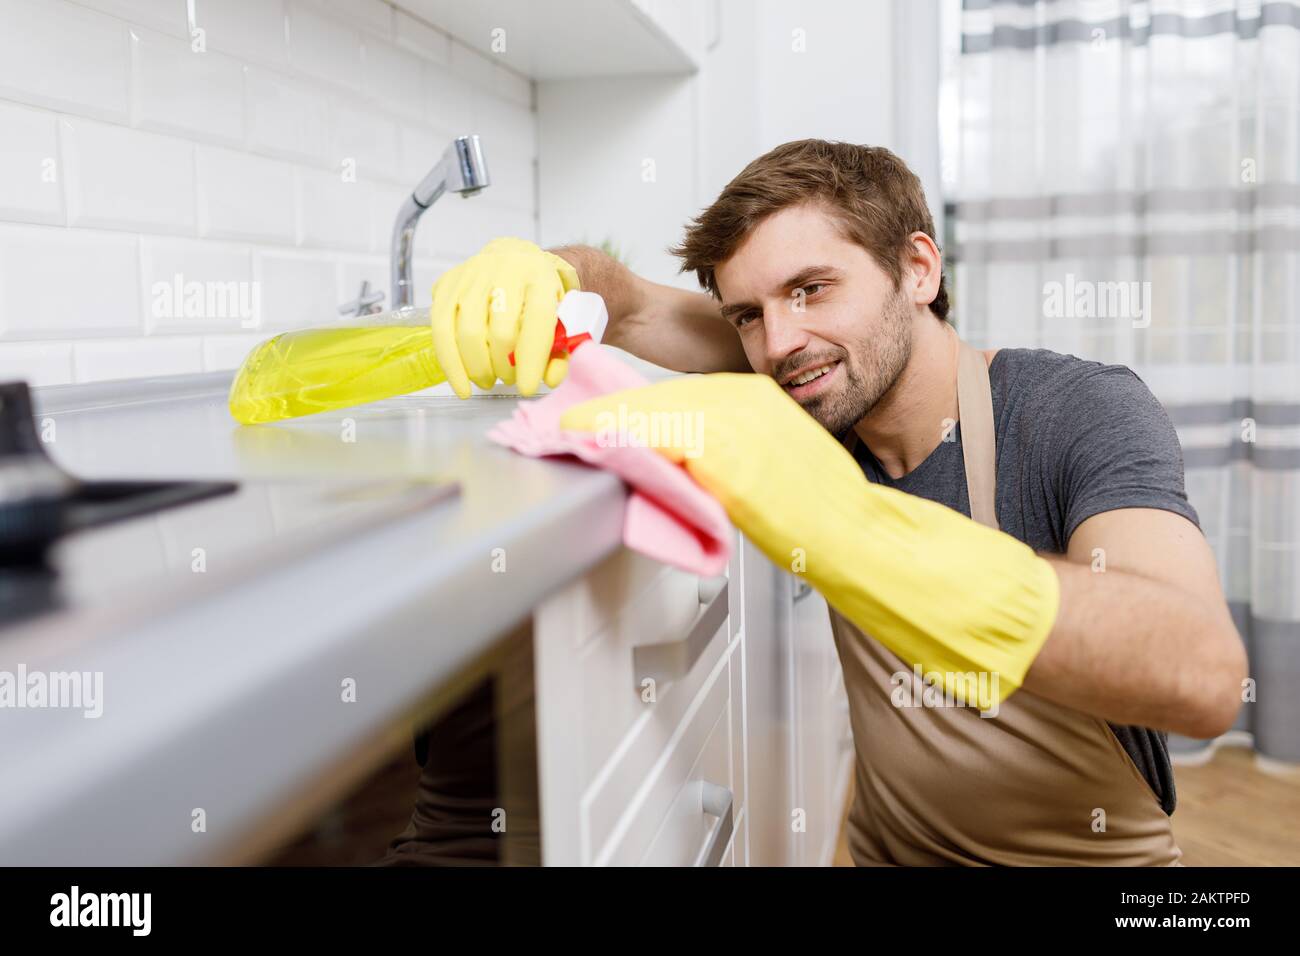 Gros plan de jeune homme dans des gants jaunes à l'aide d'un nettoyant pour laver les meubles de cuisine Banque D'Images